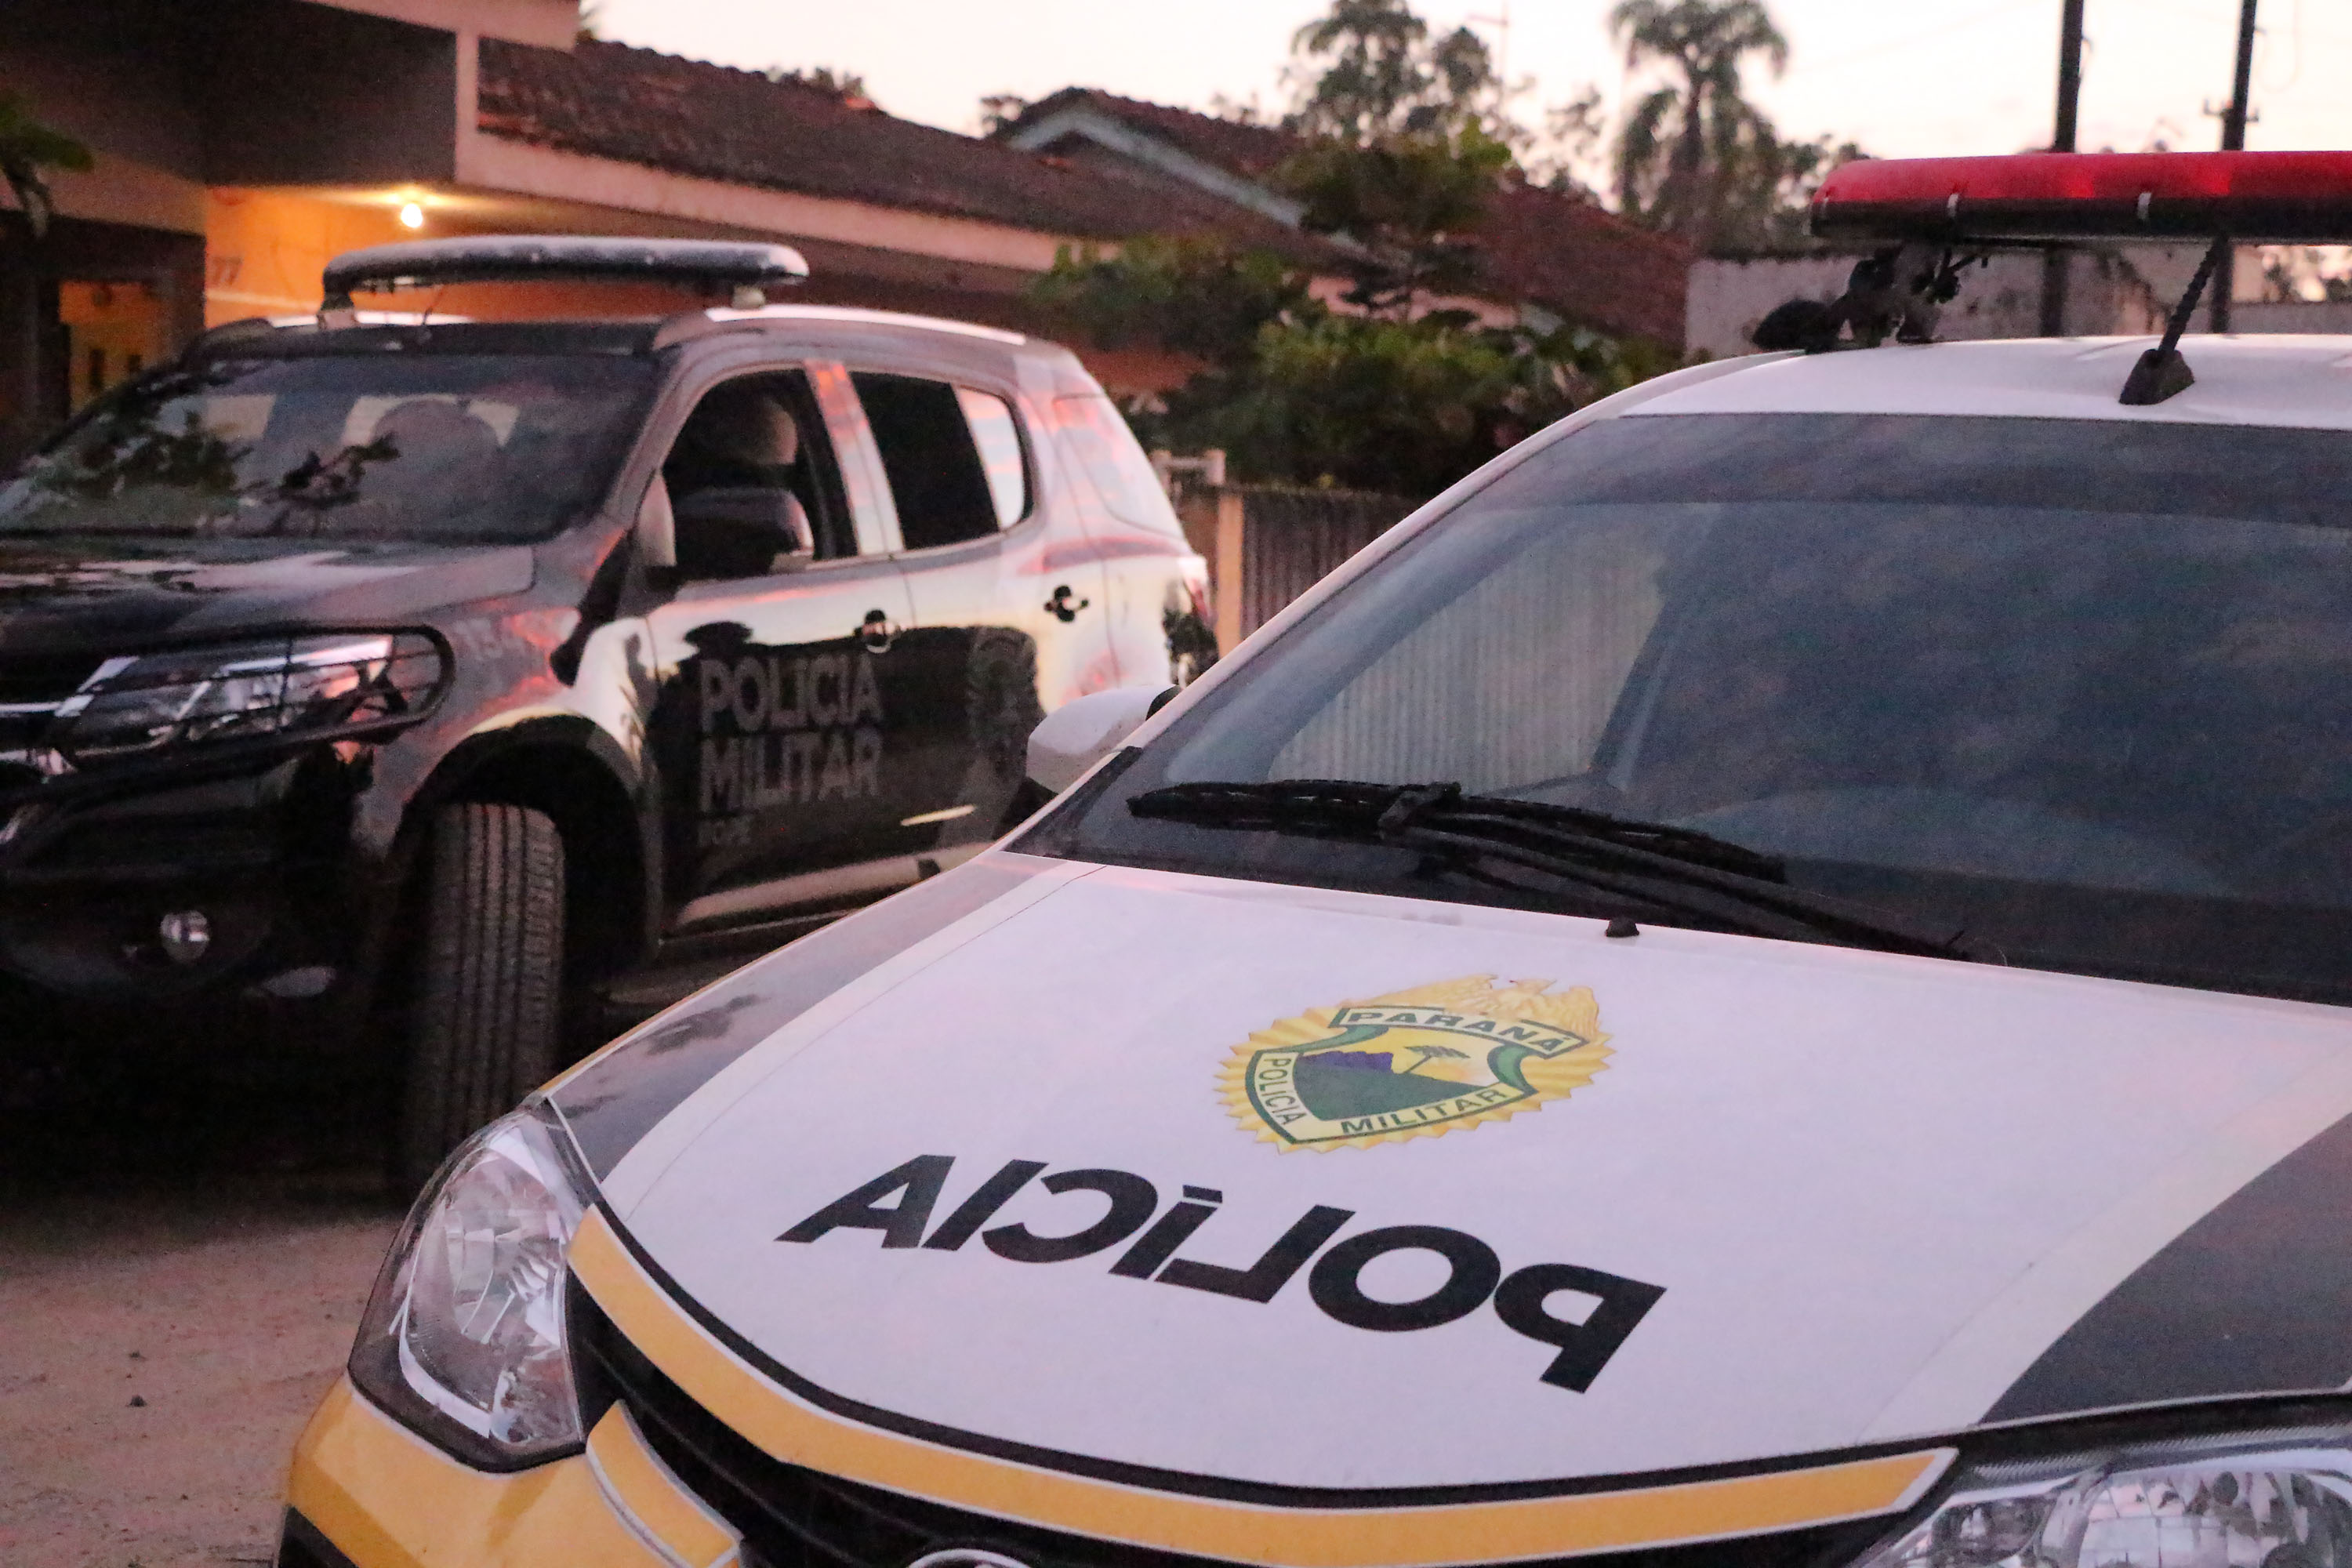  Polícia apreende drogas e armamentos em operação no litoral, Curitiba e RMC